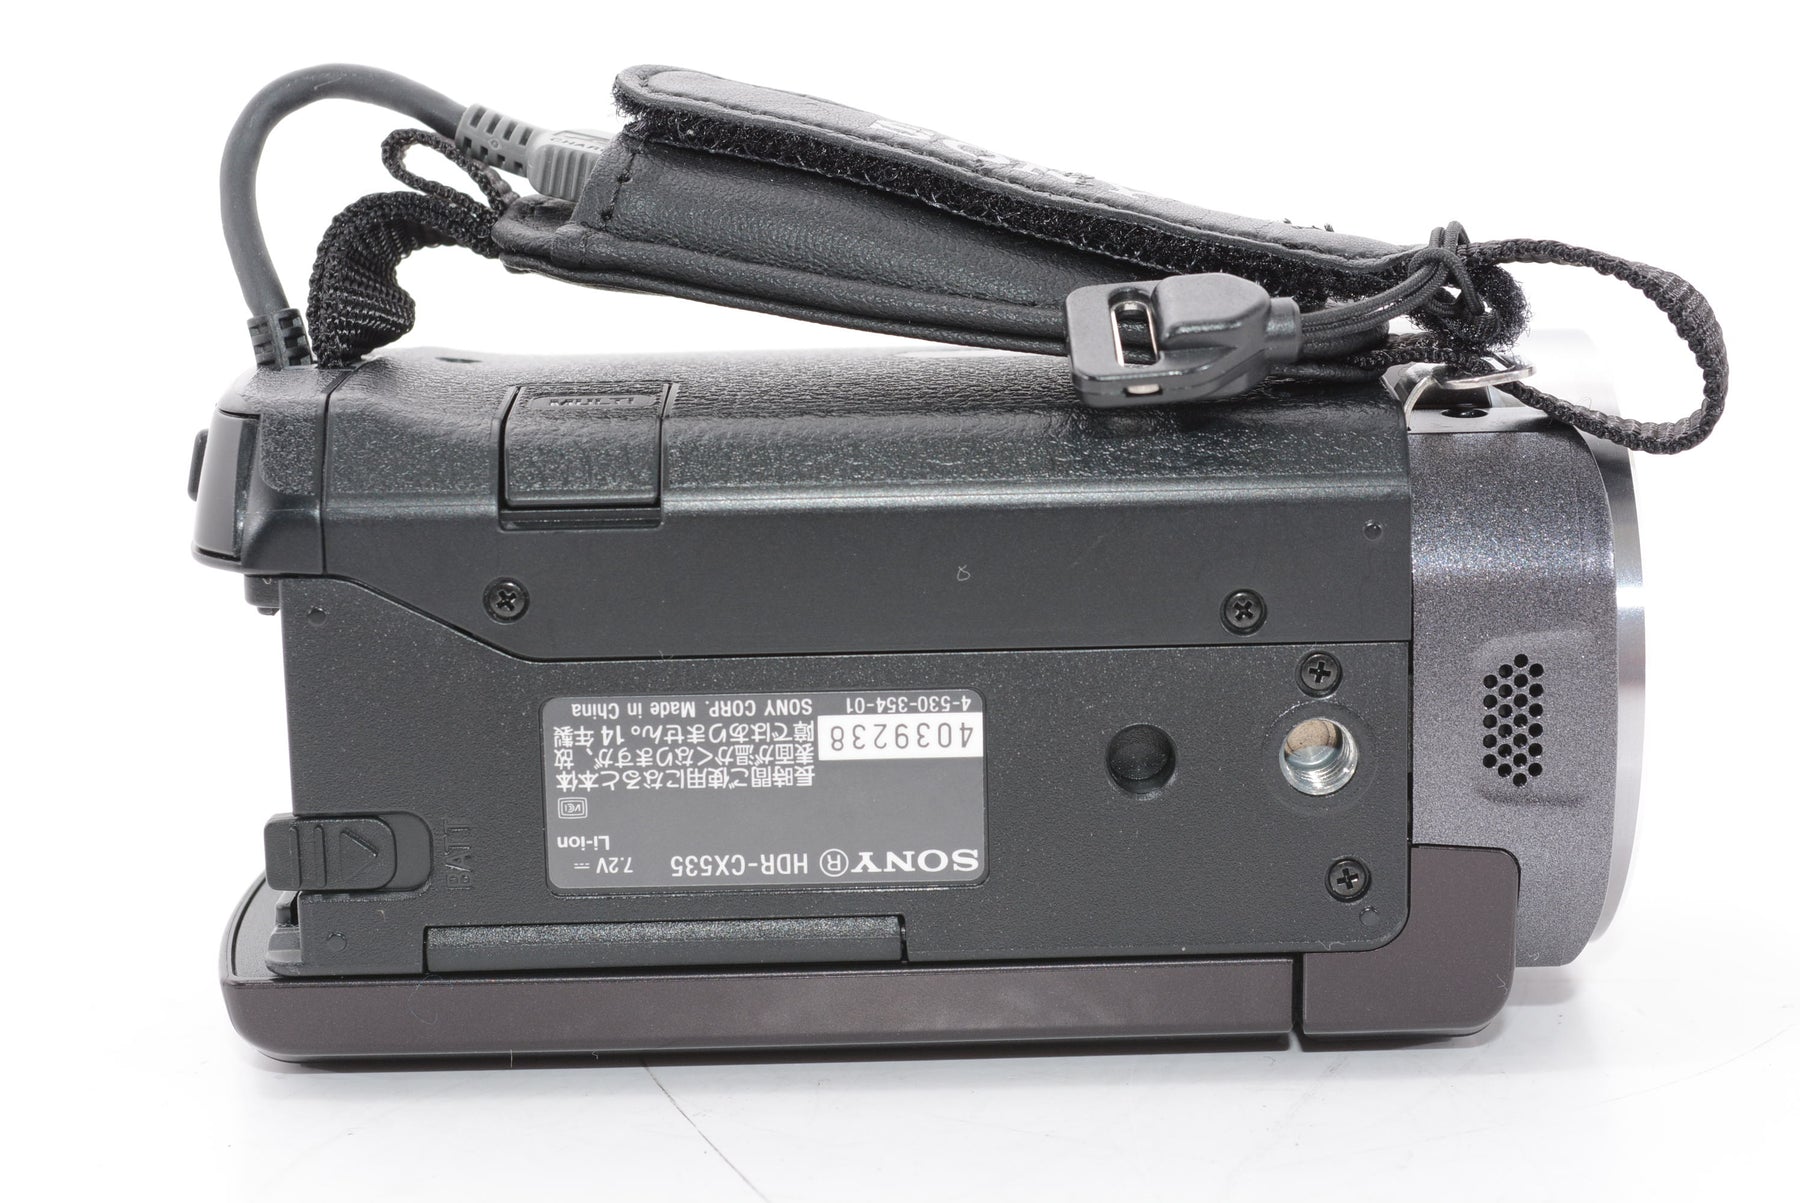 【外観特上級】ソニー SONY ビデオカメラ Handycam CX535 内蔵メモリ32GB ボルドーブラウン HDR-CX535/T